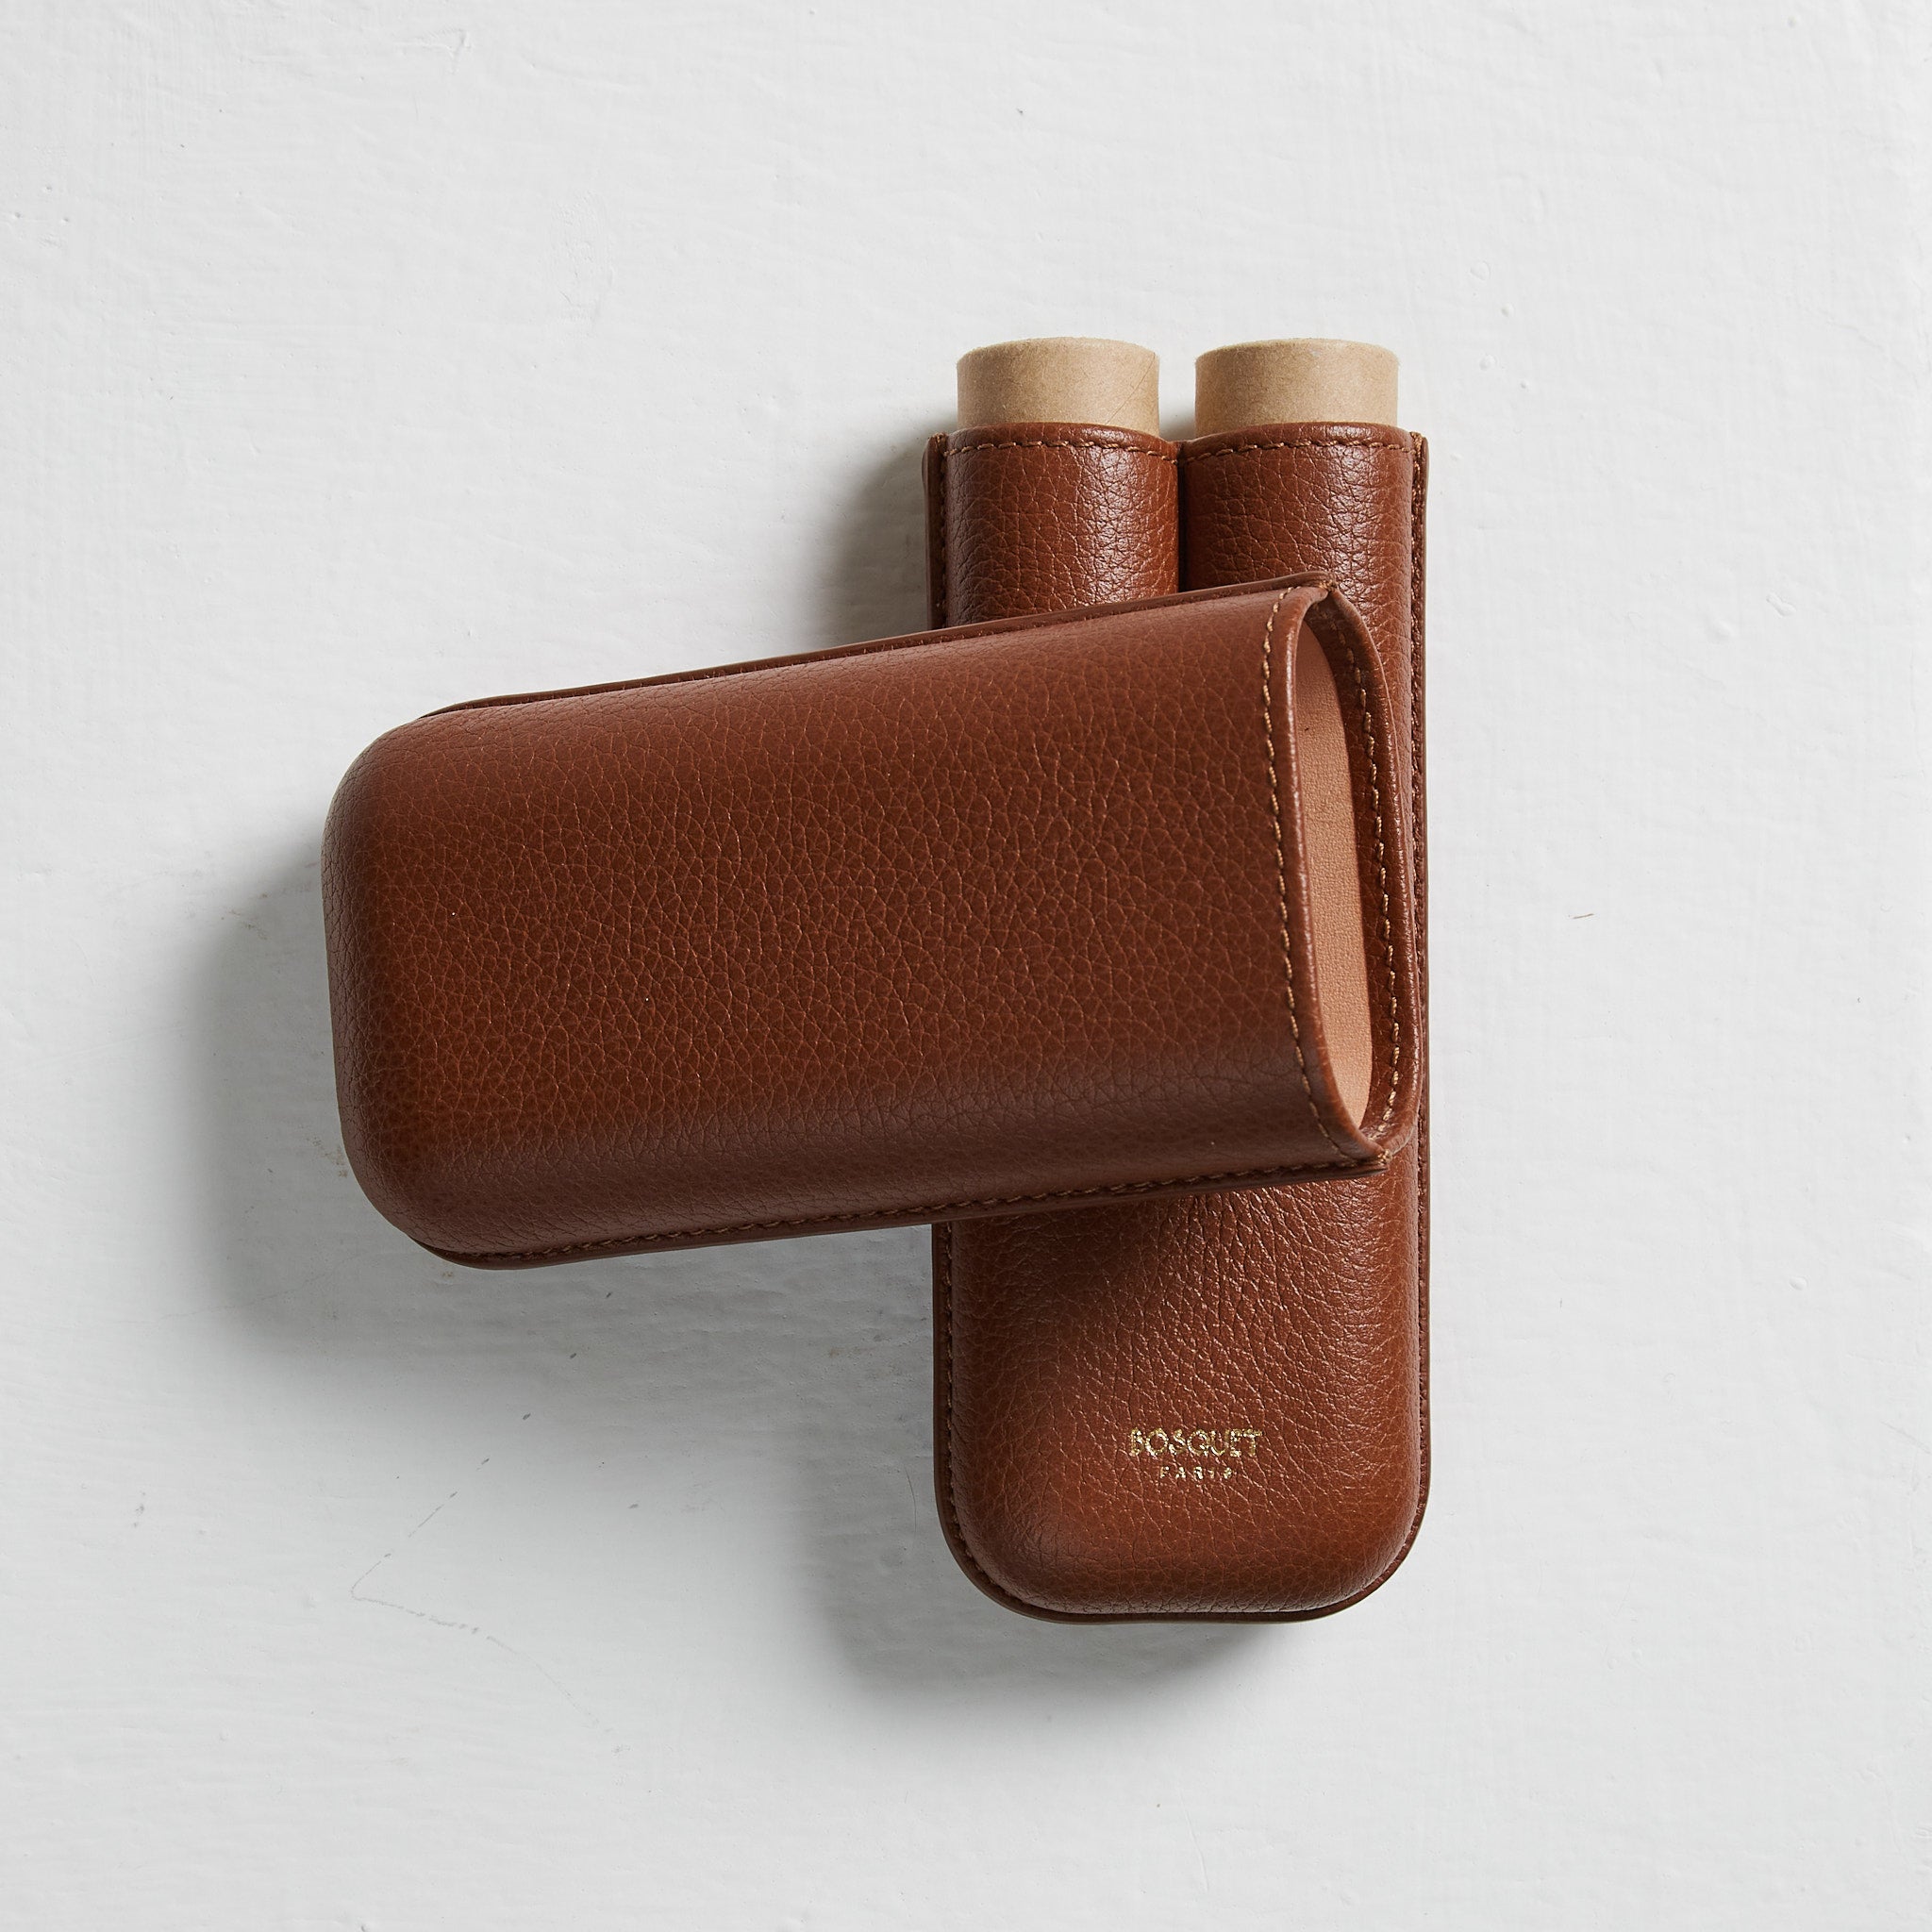 Buy Luxury Leather 2 Finger Cigar Cases | Bosquet Paris